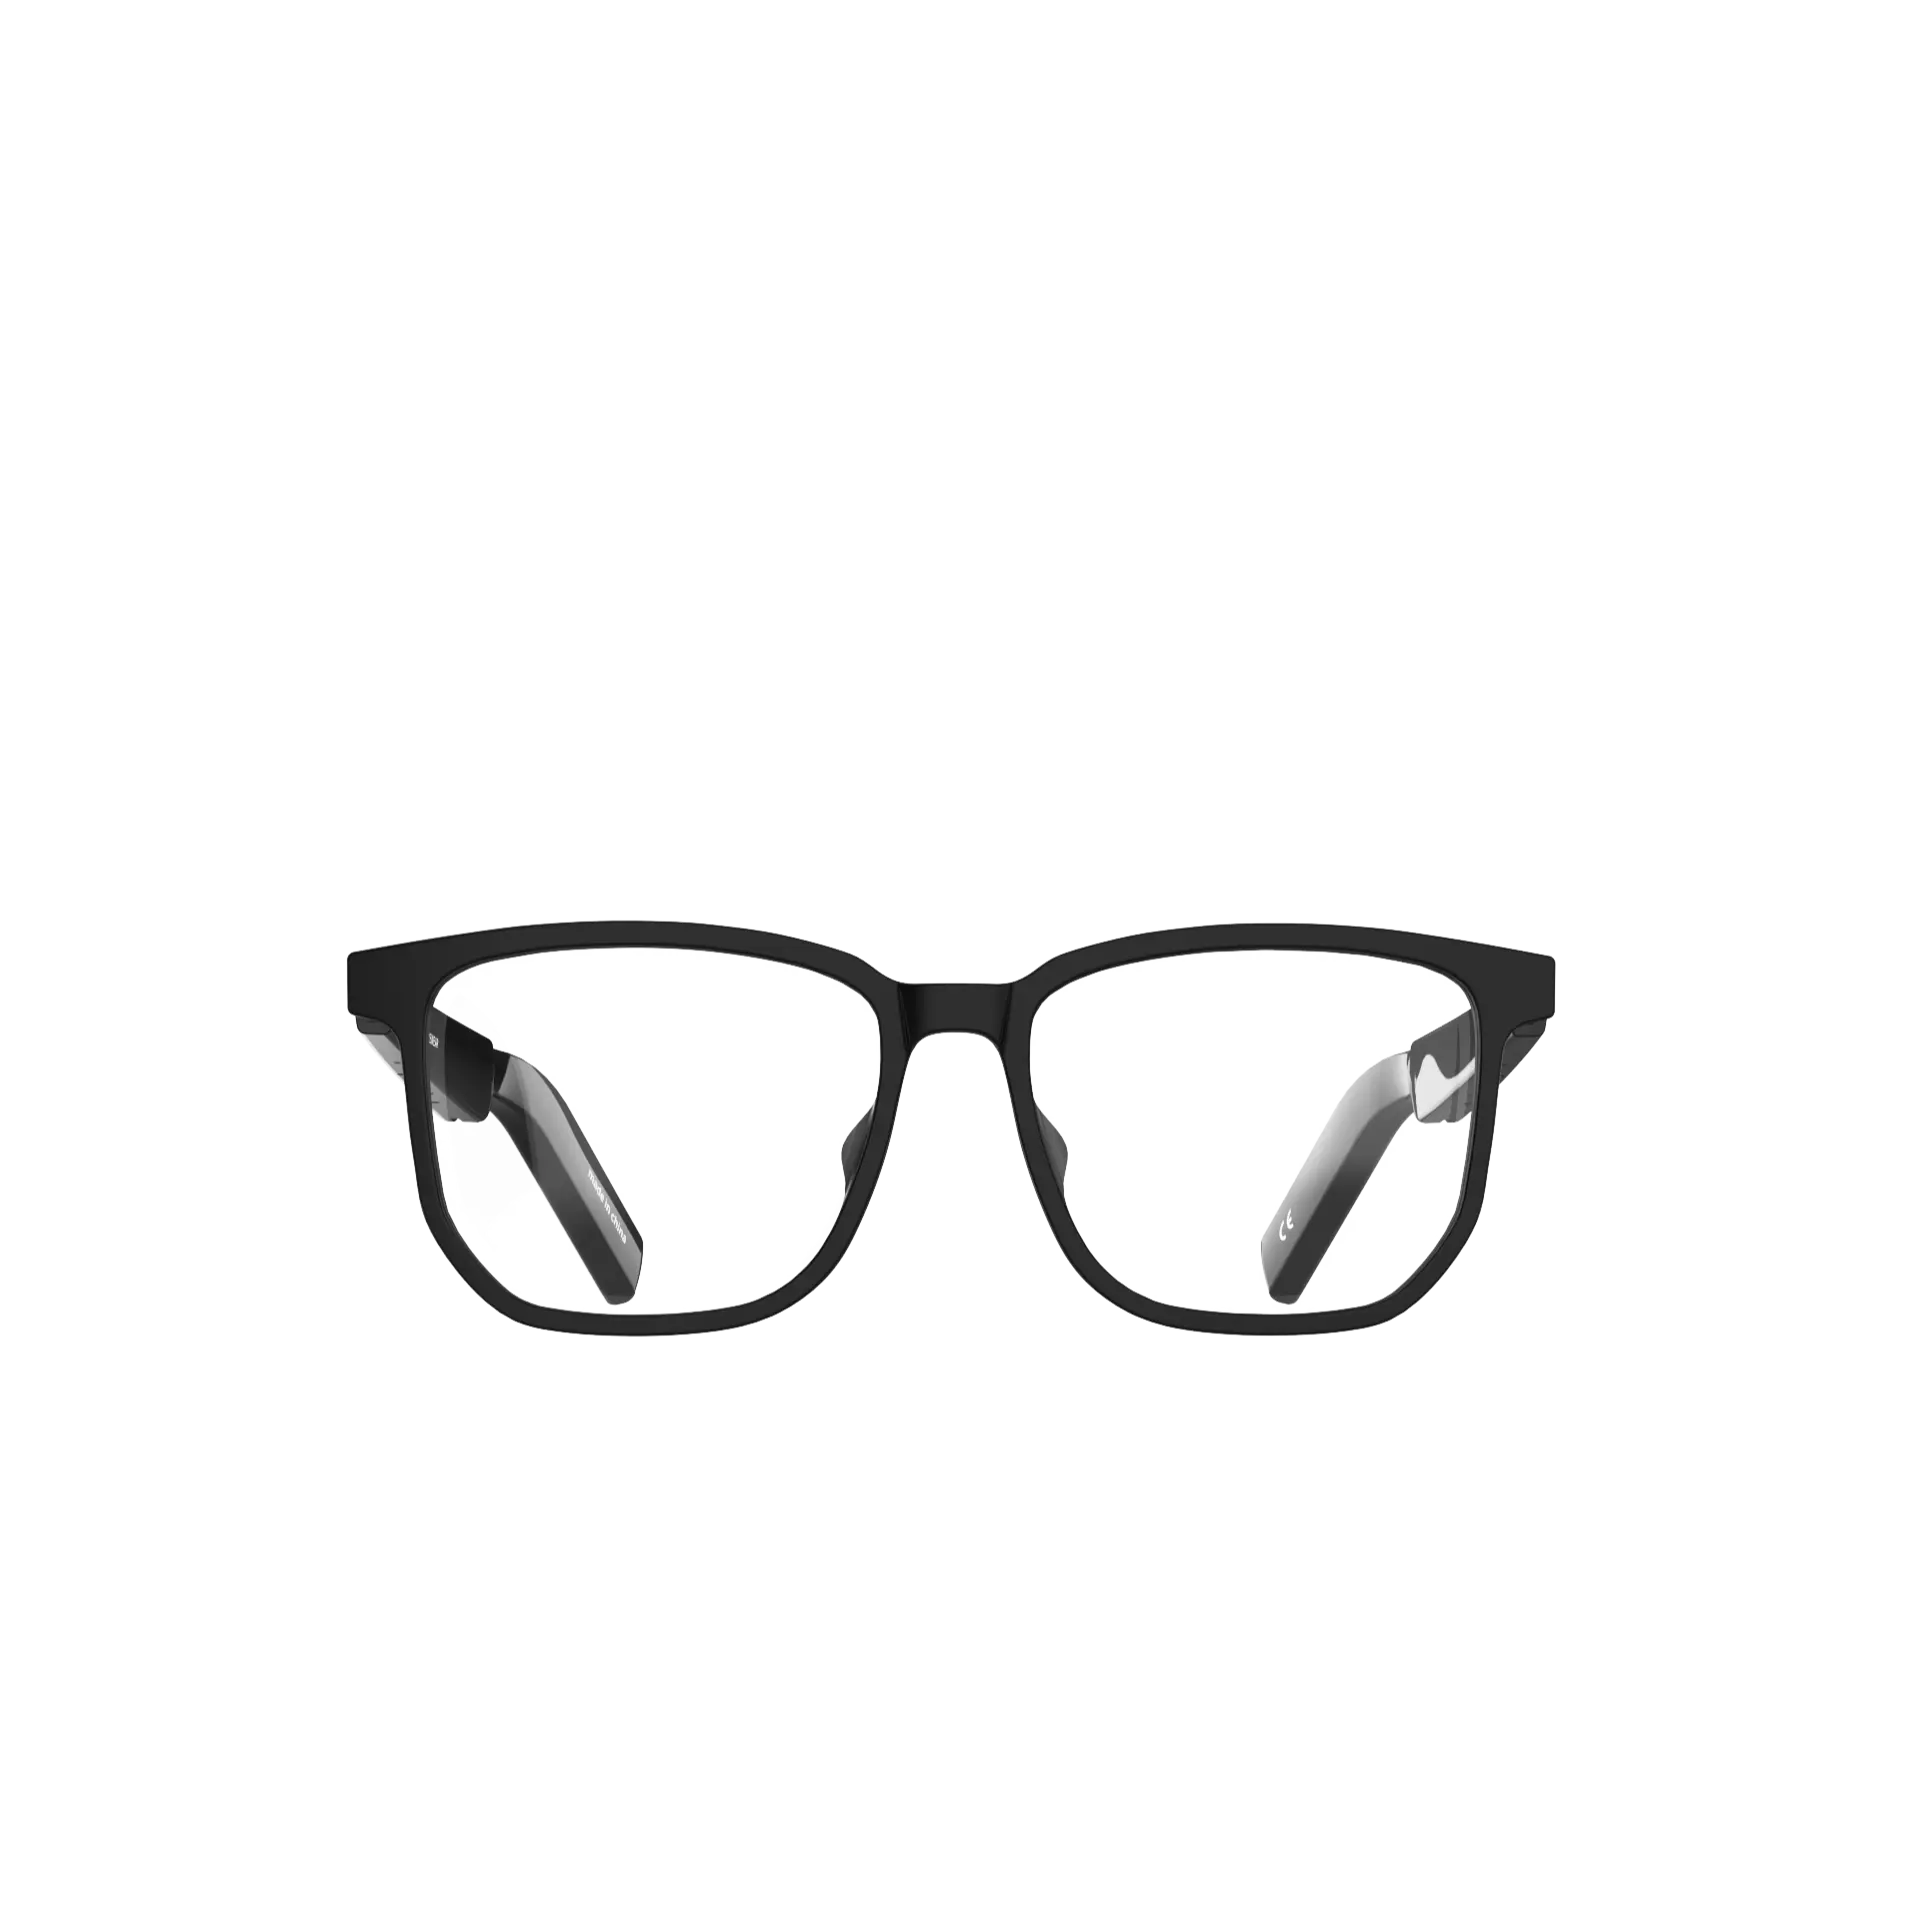 Yeni varış akıllı güneş gözlüğü Anti mavi işık gözler koruma ses Bluetooth hoparlör ile 5.3 gözlük akıllı optik gözlük